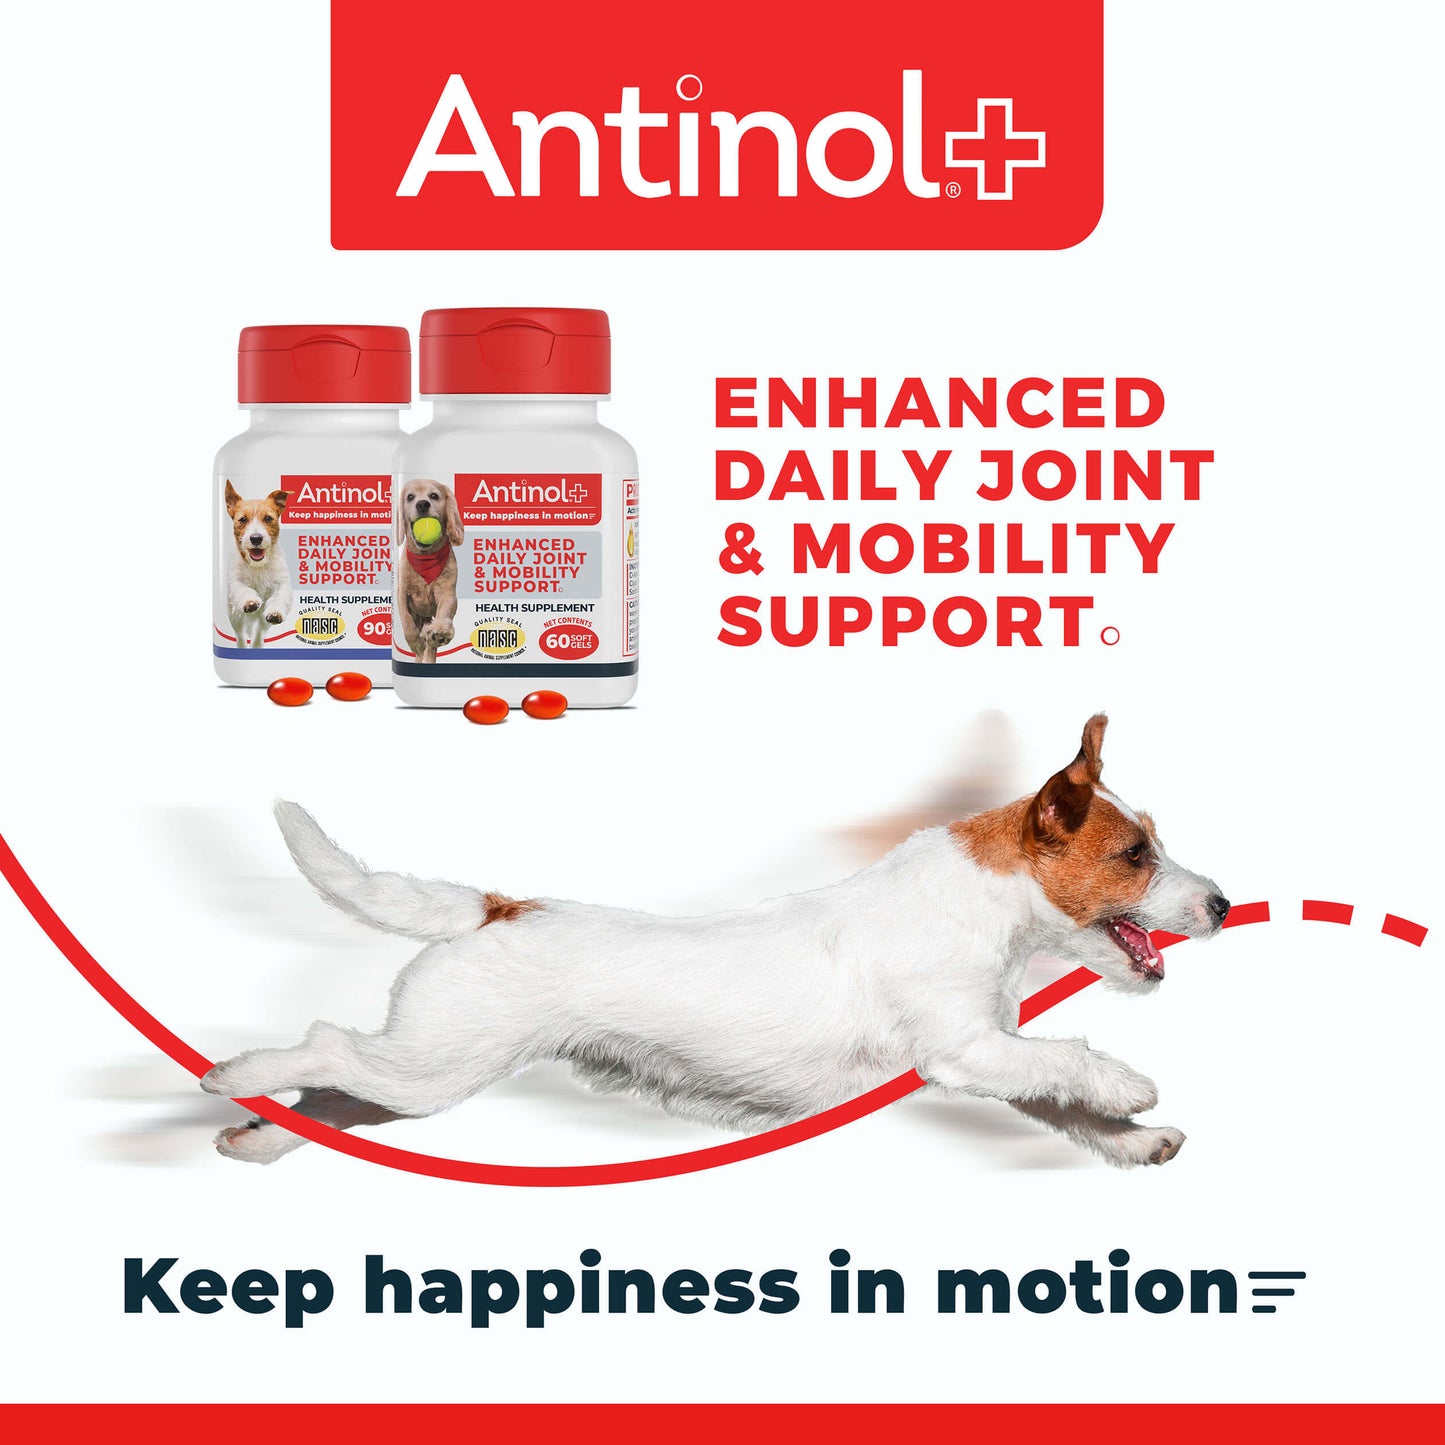 Antinol® Plus - 90ct